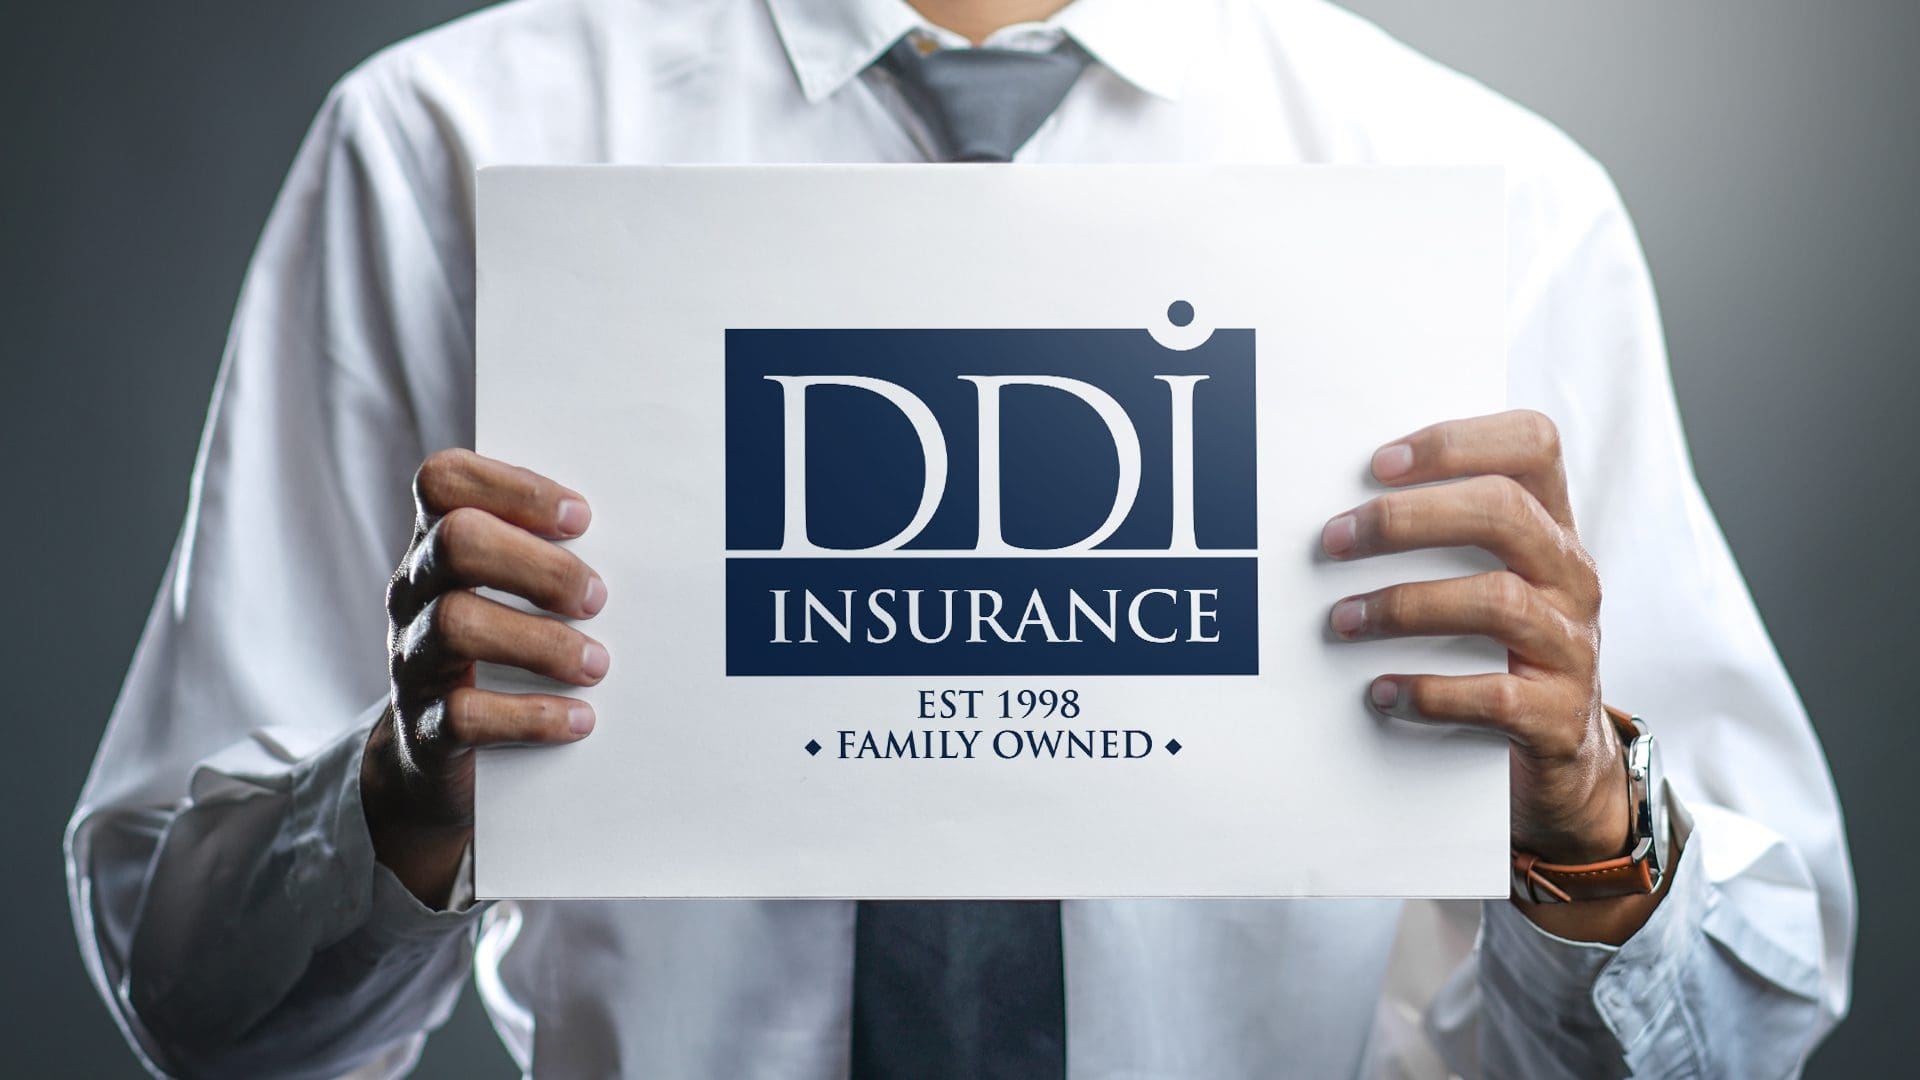 DDI insurance – Logo